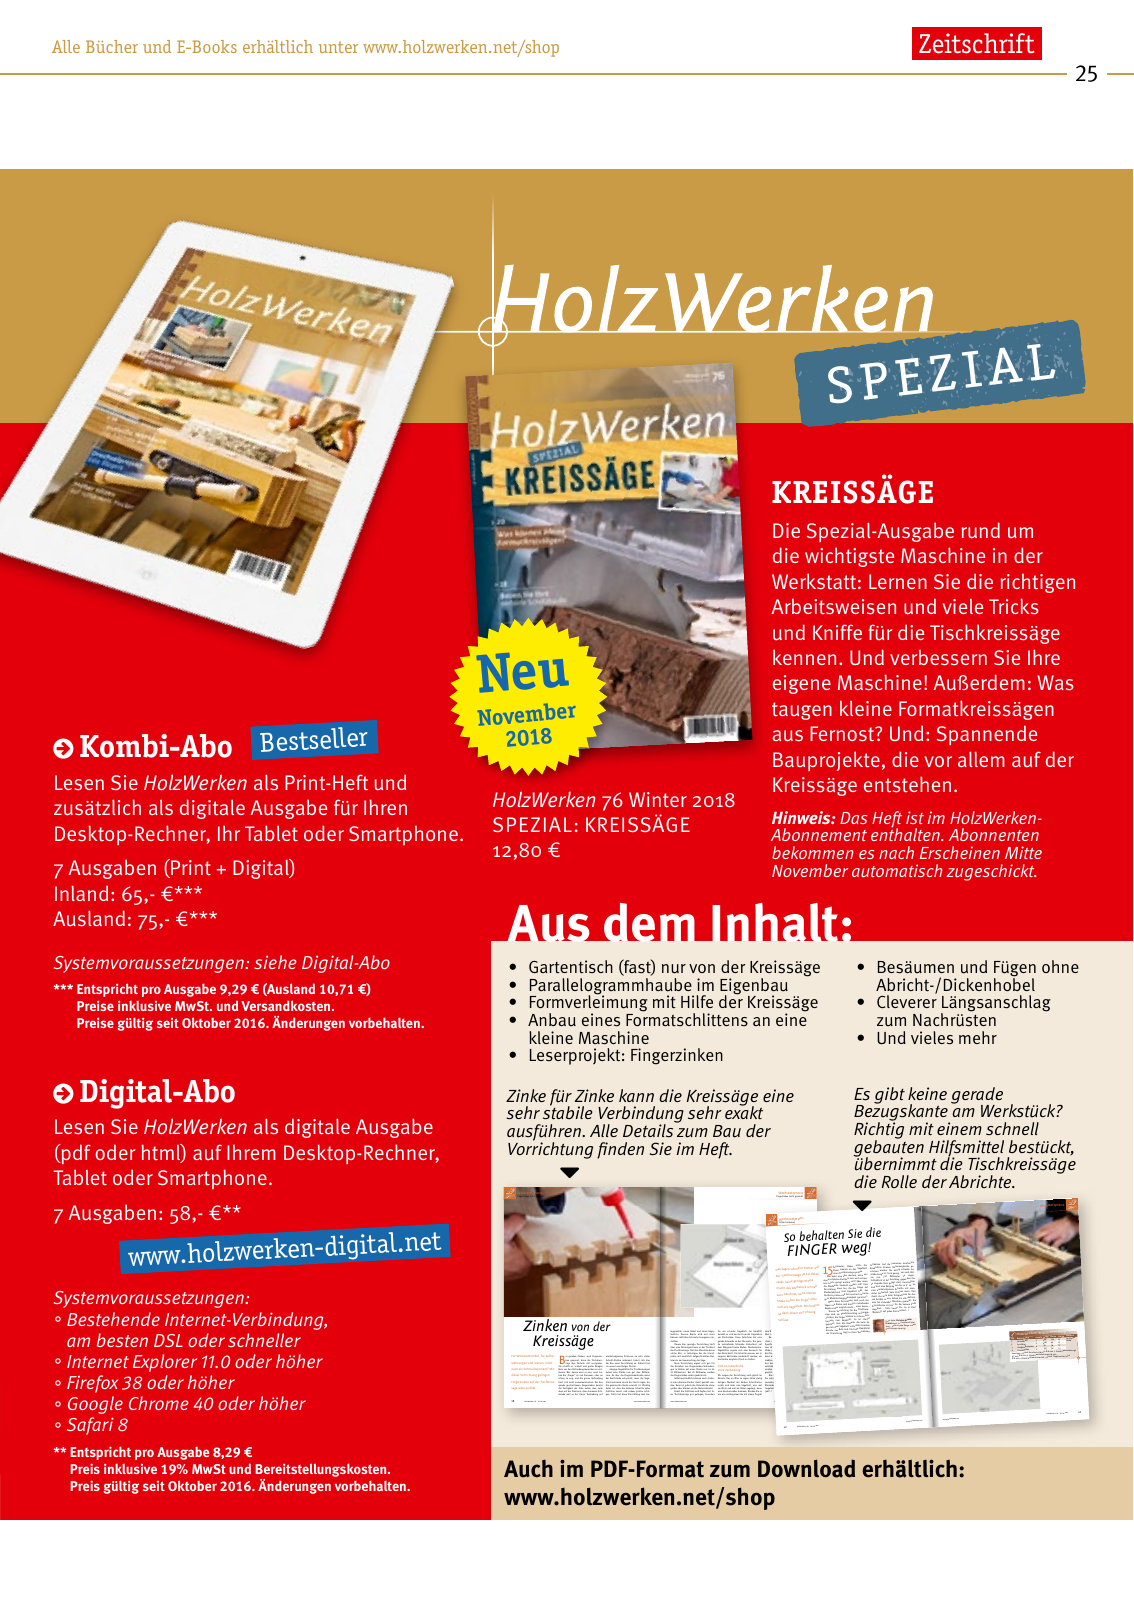 Vorschau HolzWerken Katalog 2019 Seite 25